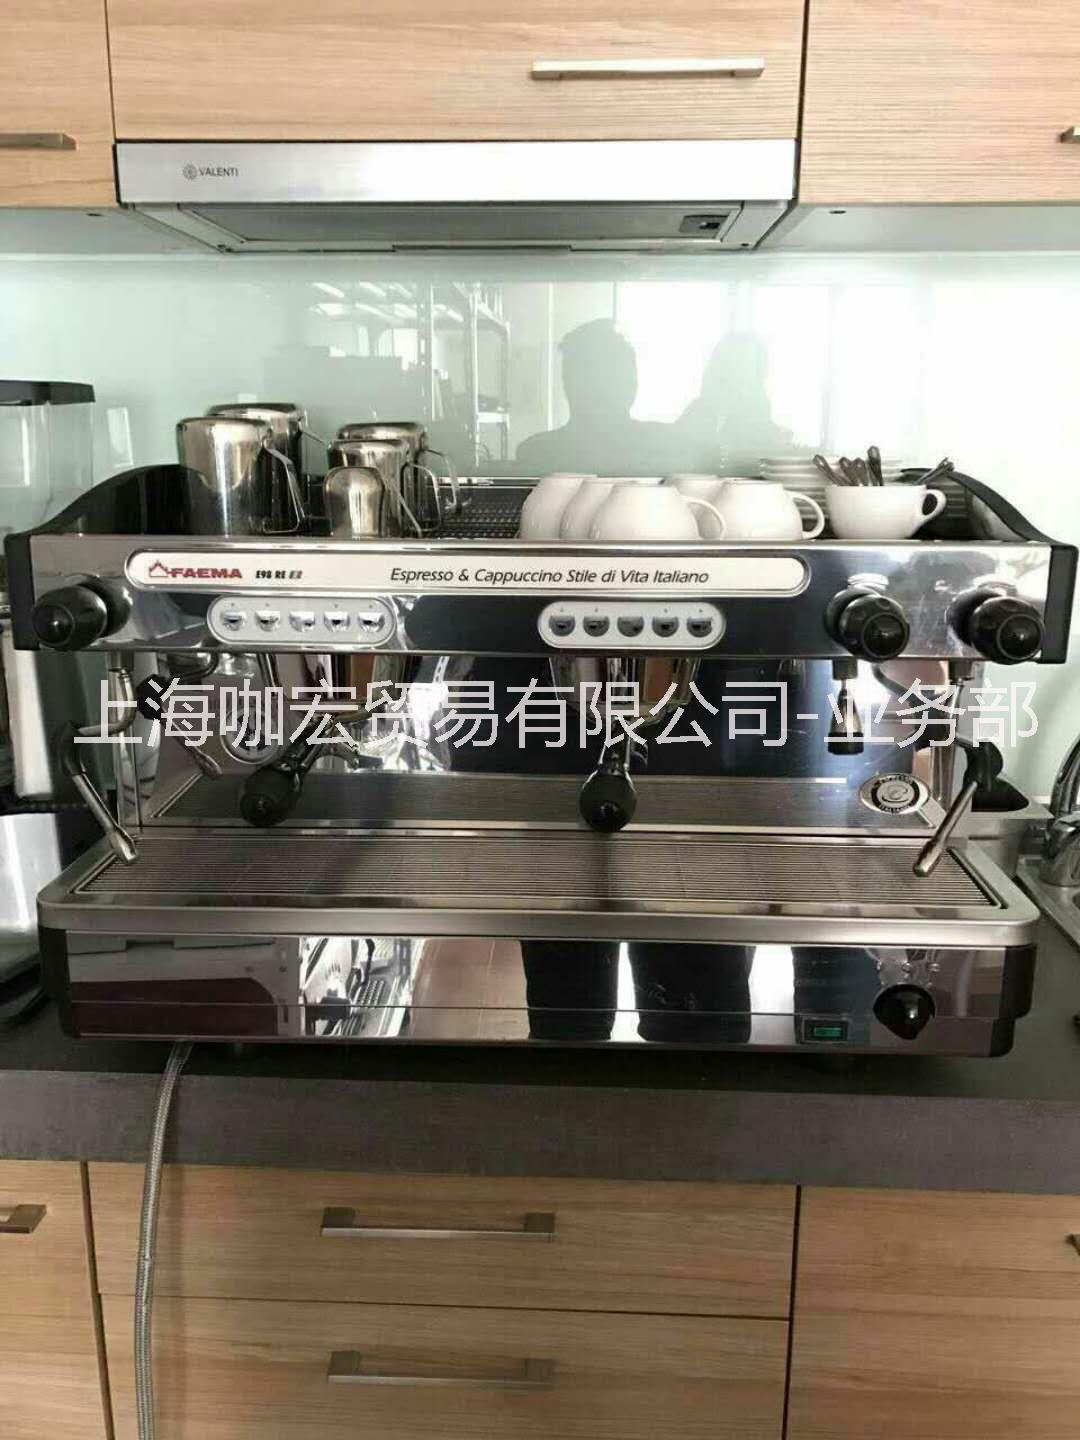 上海市供应商用半自动咖啡机临时租赁厂家供应商用半自动咖啡机临时租赁